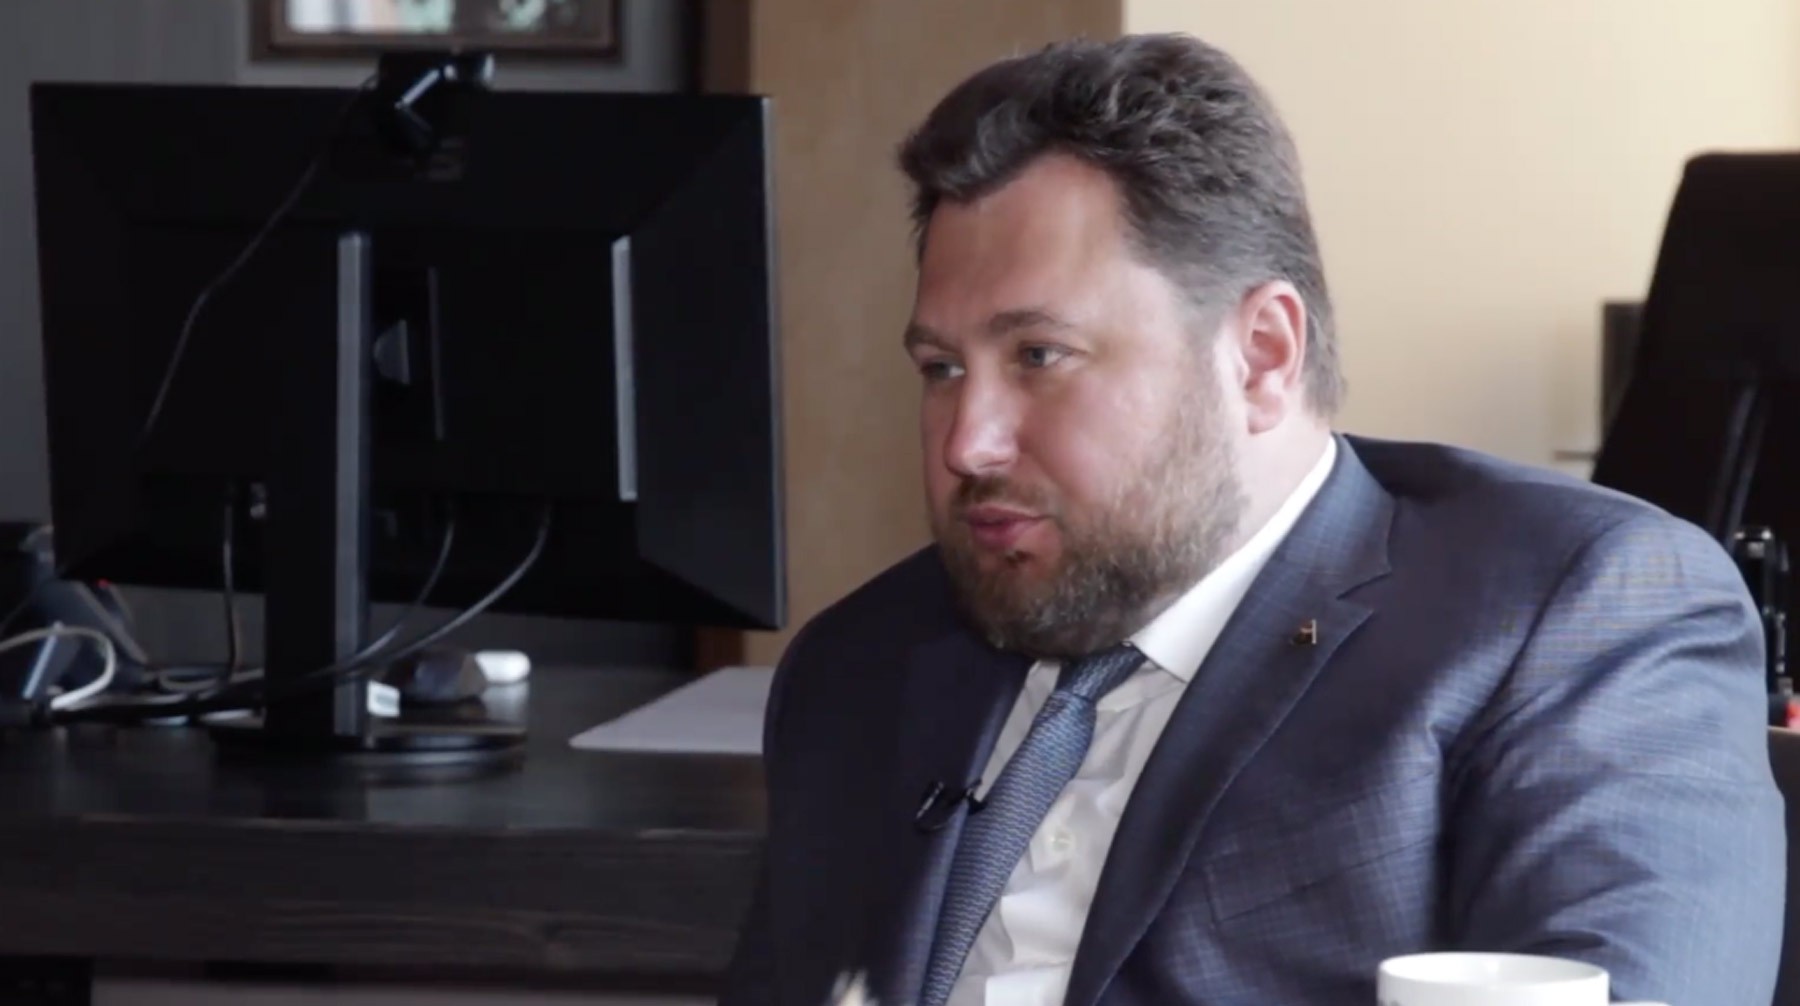 Dailystorm - Адвокат LʼOne объяснил, почему с лейбла Тимати взыскивают 350 миллионов рублей